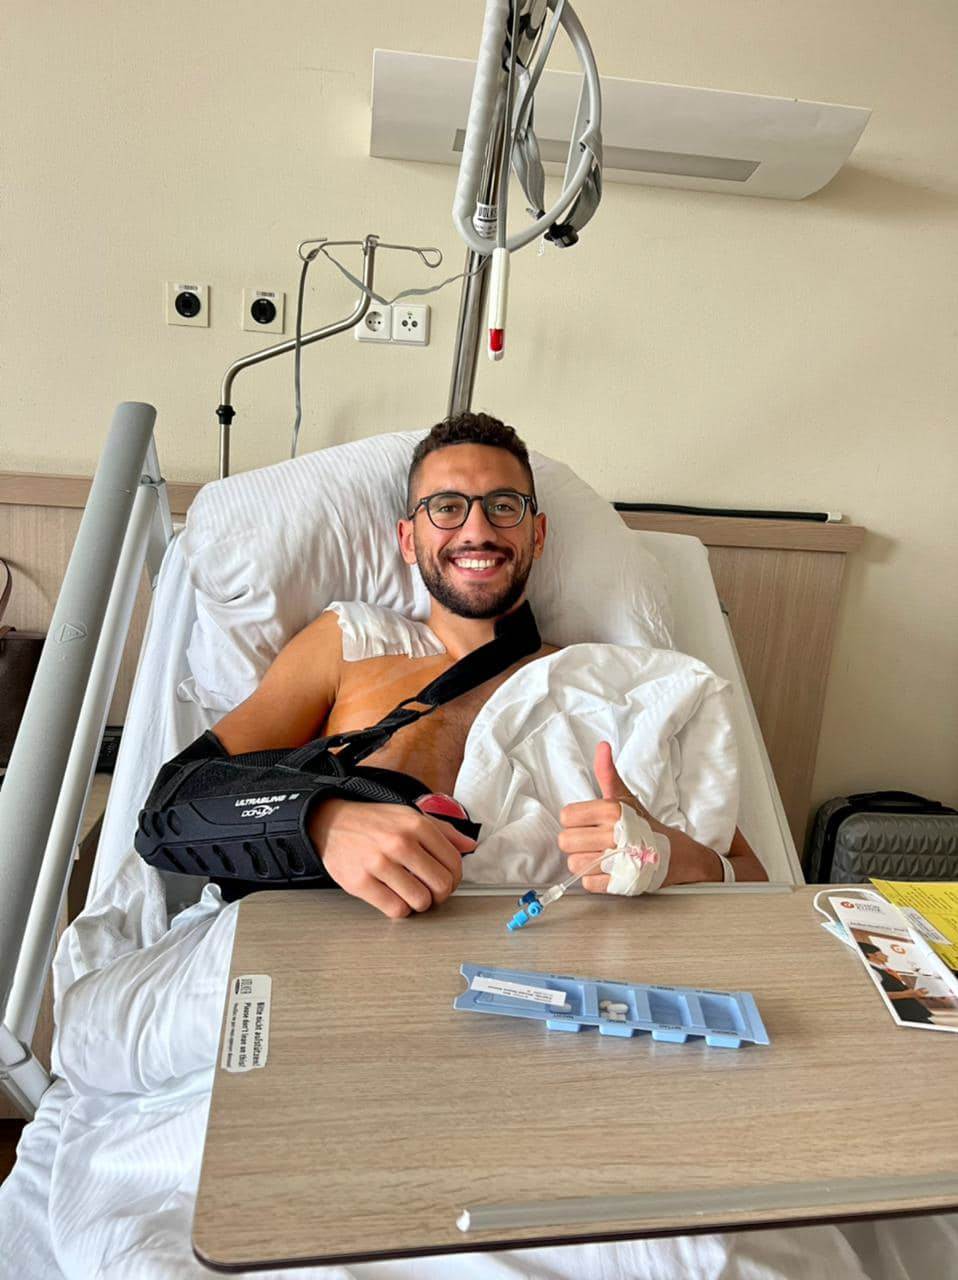 أحمد الجندي يخضع لعملية جراحية في الكتف